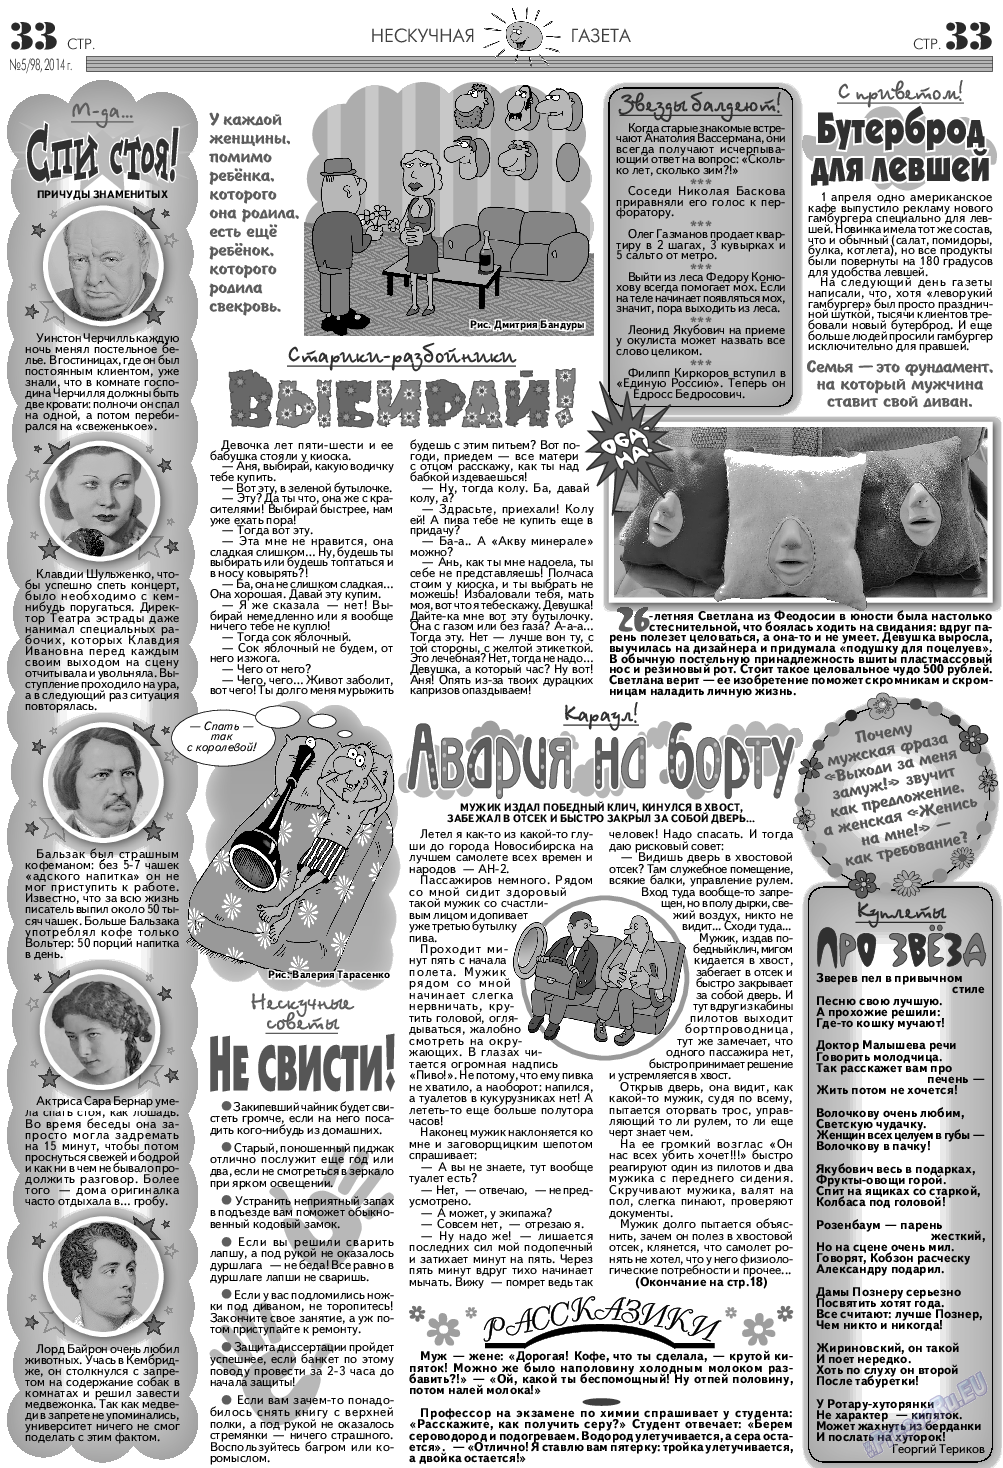 Нескучная газета, журнал. 2014 №5 стр.33